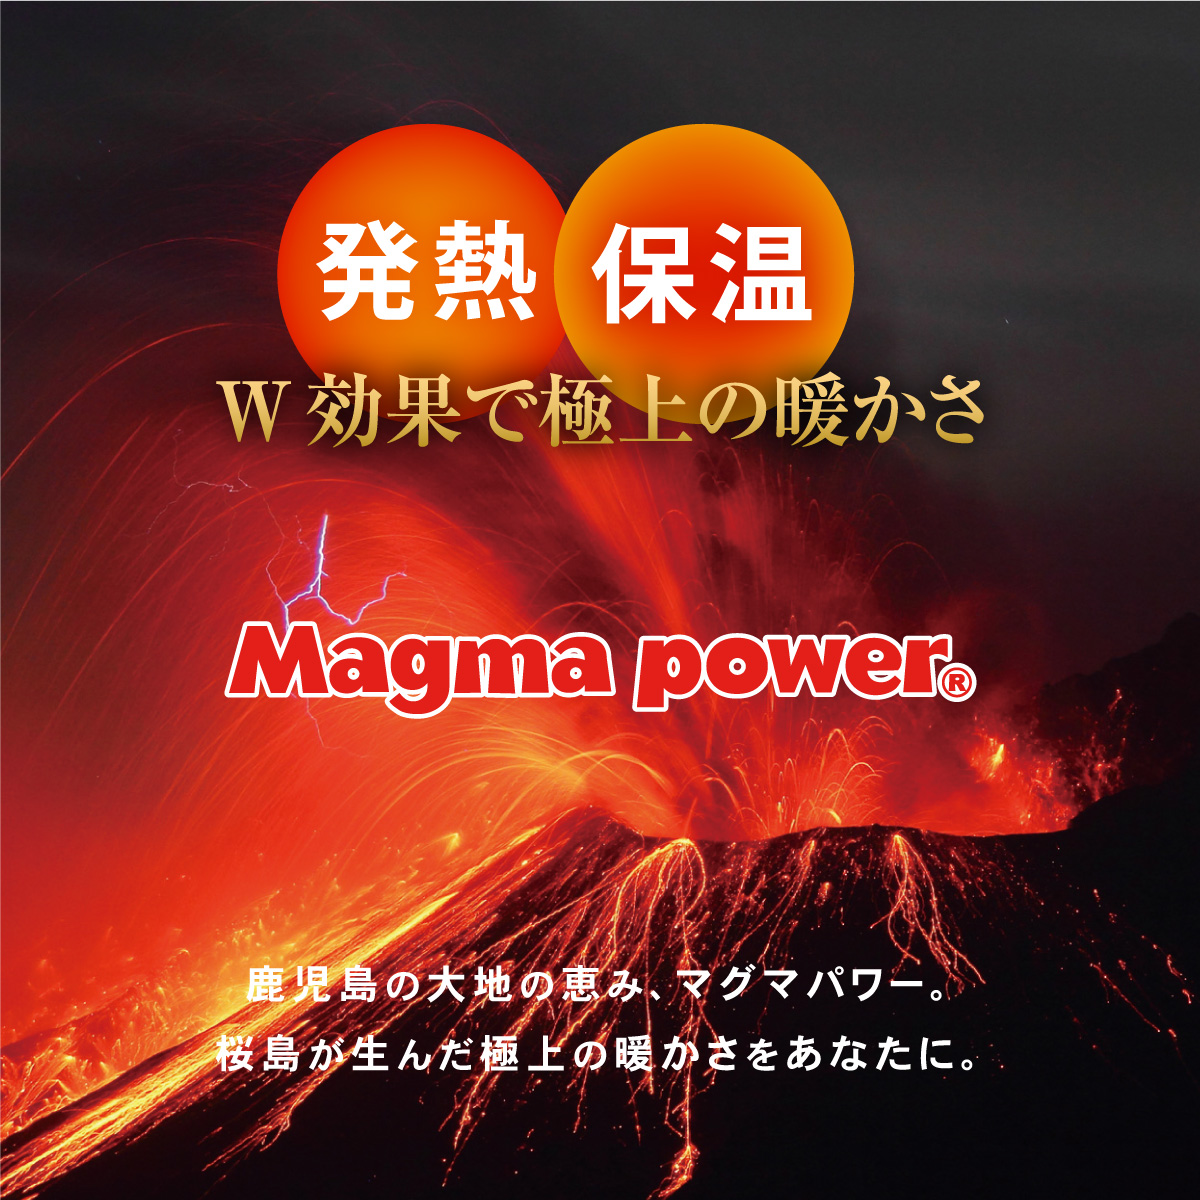 鹿児島の大地の恵み、マグマパワー。桜島が生んだ極上の暖かさをあなたに。